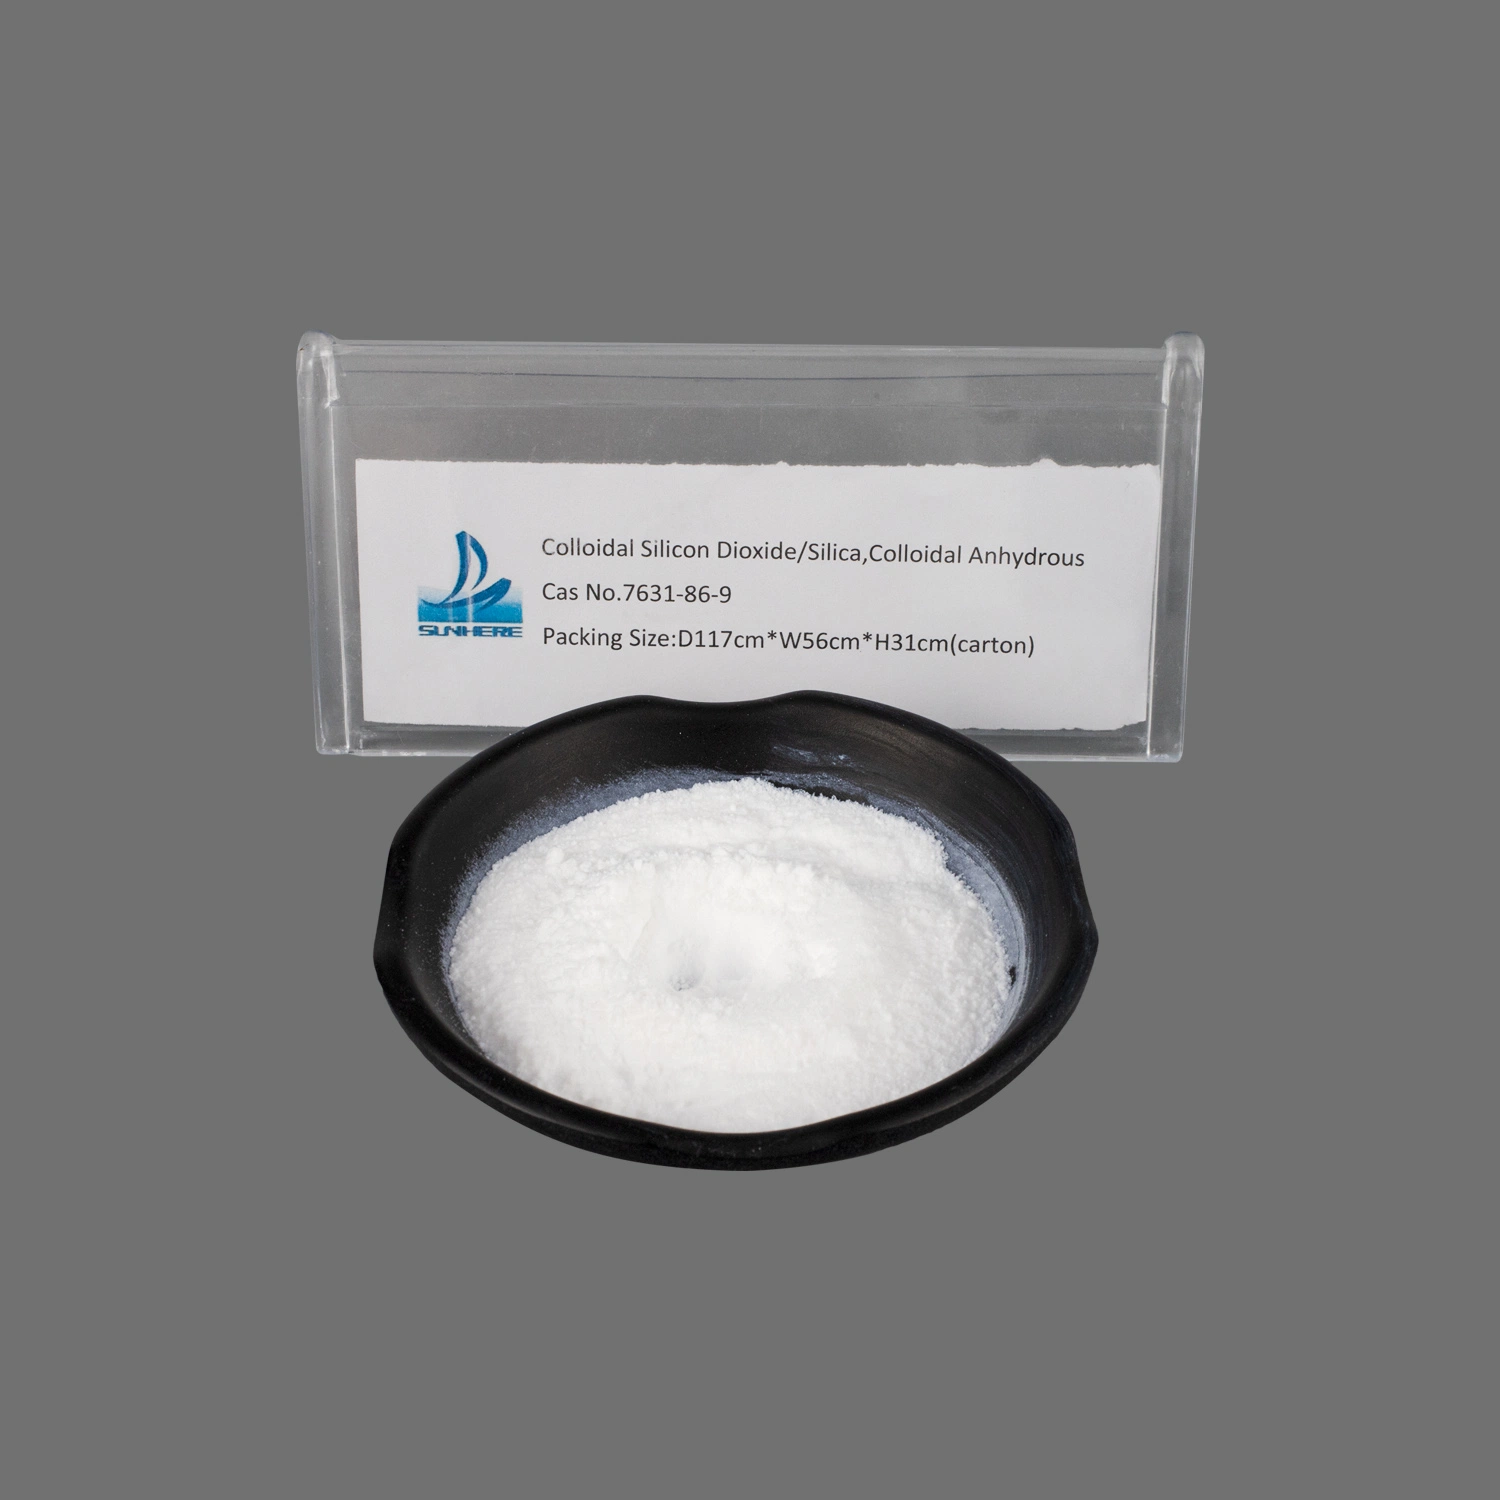 Pharma Grade Günstige Preis Pharmazeutische Qualität Kolloidales Siliziumdioxid Hersteller CAS 7631-86-9